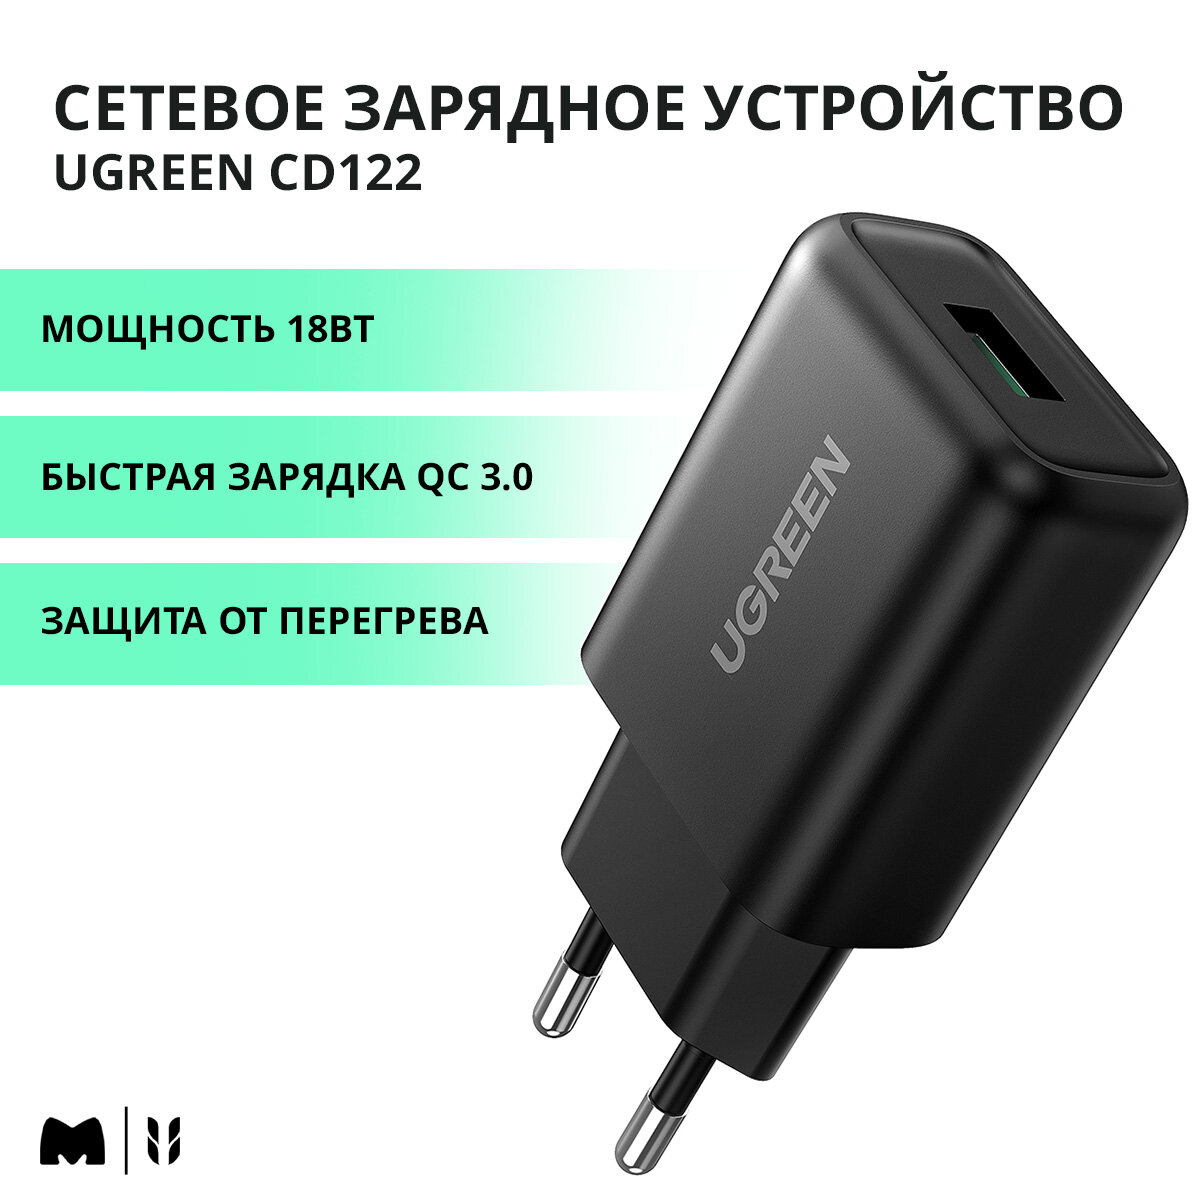 Сетевое зарядное устройство 18Вт UGREEN CD122 / USB-A / Быстрая зарядка QC 3.0 / цвет черный (70273)